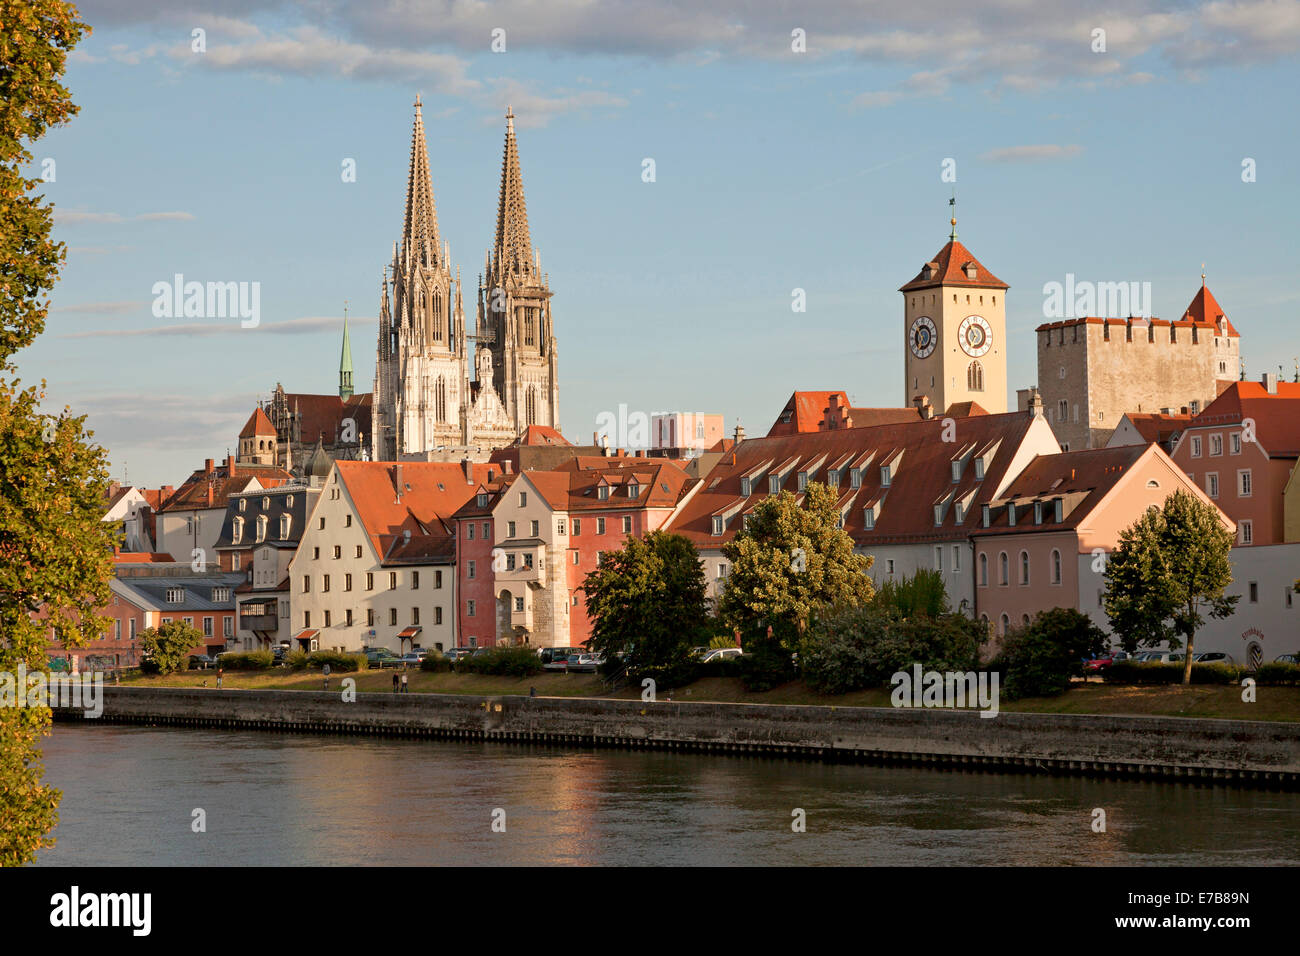 Vue urbaine avec Danube, centre médiéval, la tour de l'hôtel de ville et cathédrale de Regensburg à Regensburg, Bavière, Allemagne, Europe Banque D'Images